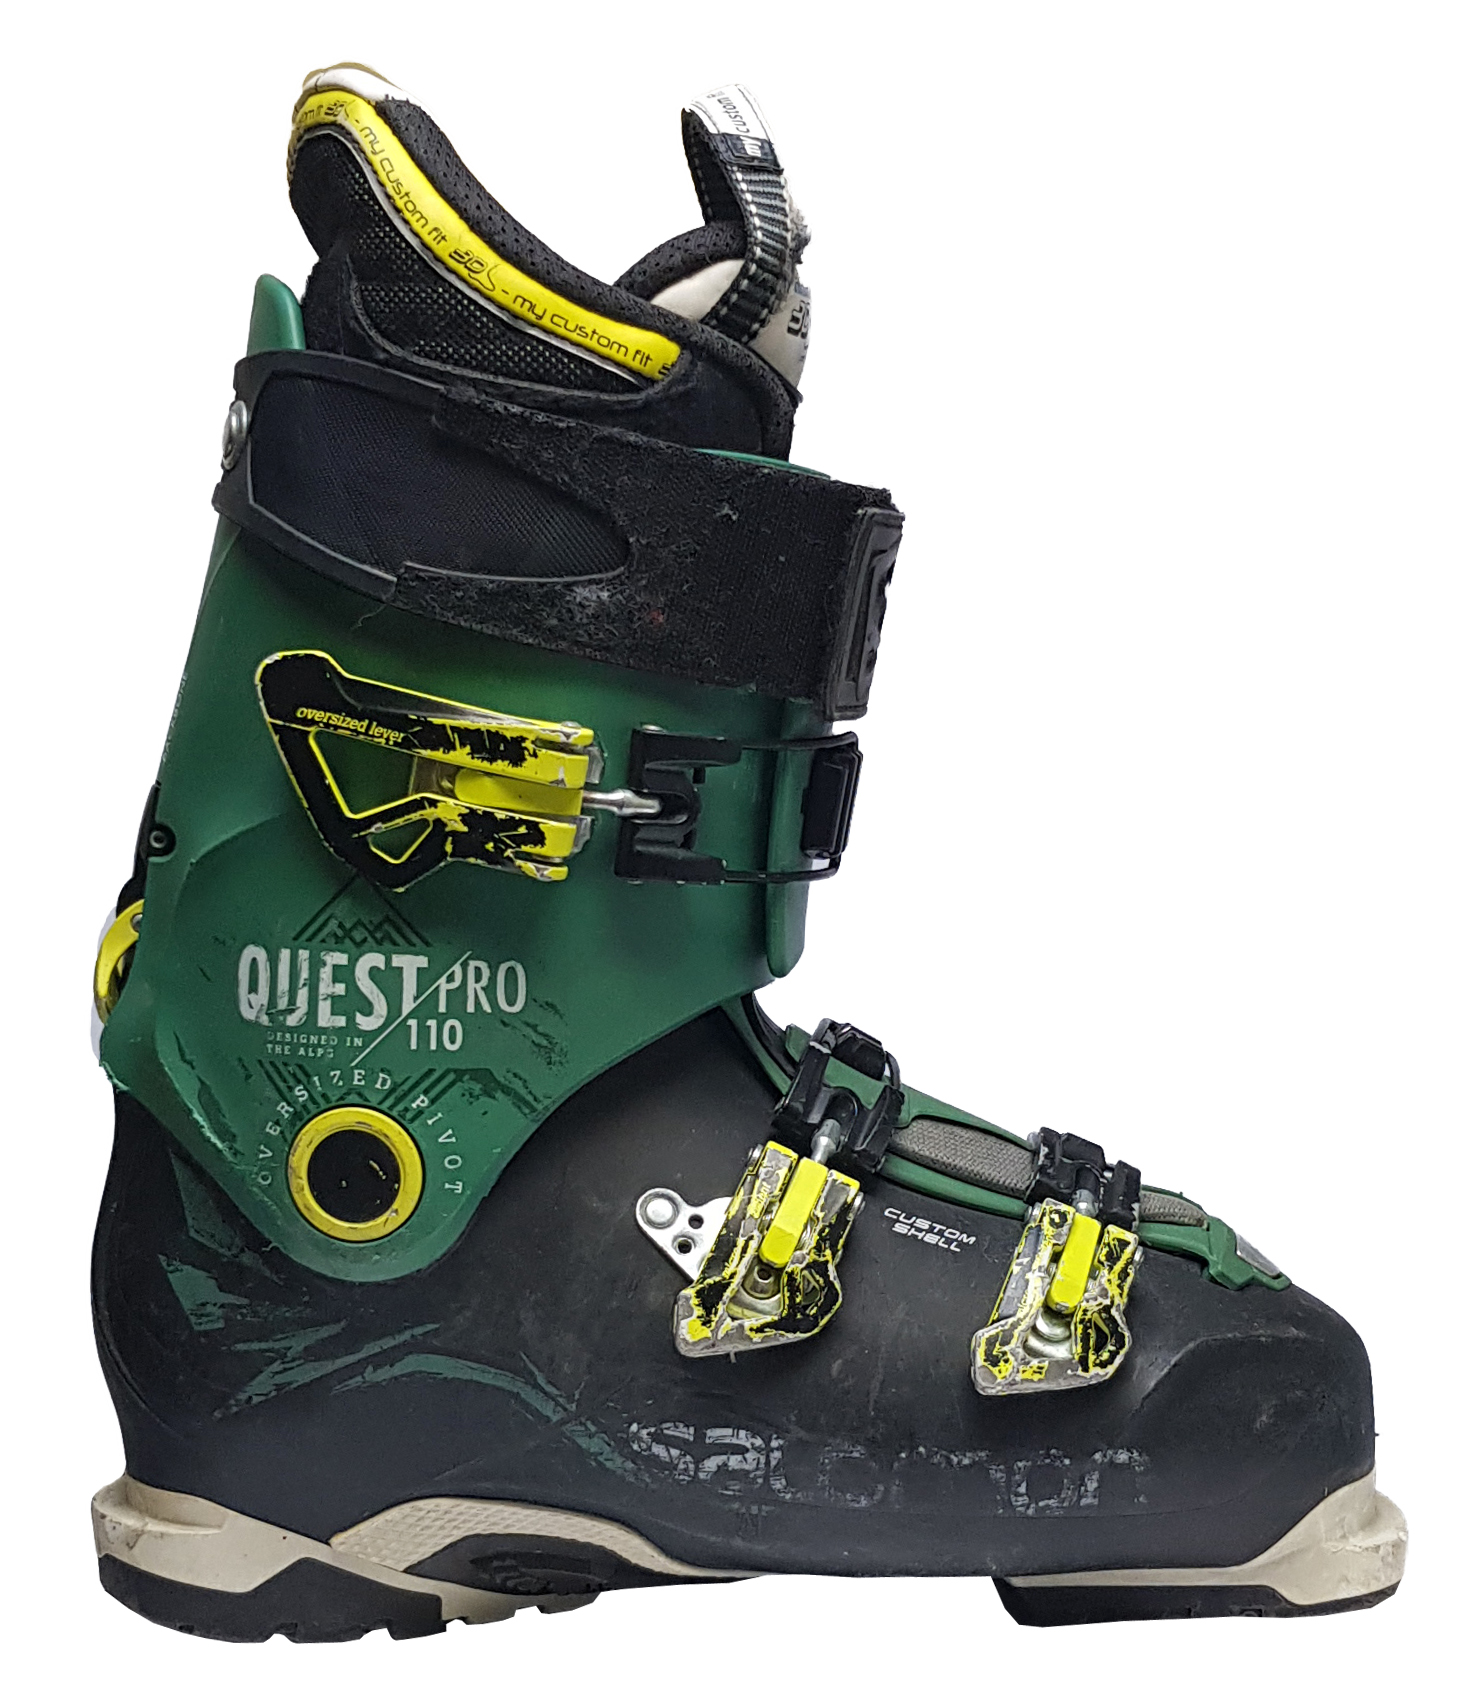 Potestowe buty narciarskie Salomon Quest Pro 110, rozmiar 43.5/28.5 ::  Sklep Sportowy - outlet sportowy, koncówki kolekcji, wyprzedaże, narty,  deski, wiązania, sprzet narciarski, buty sportowe